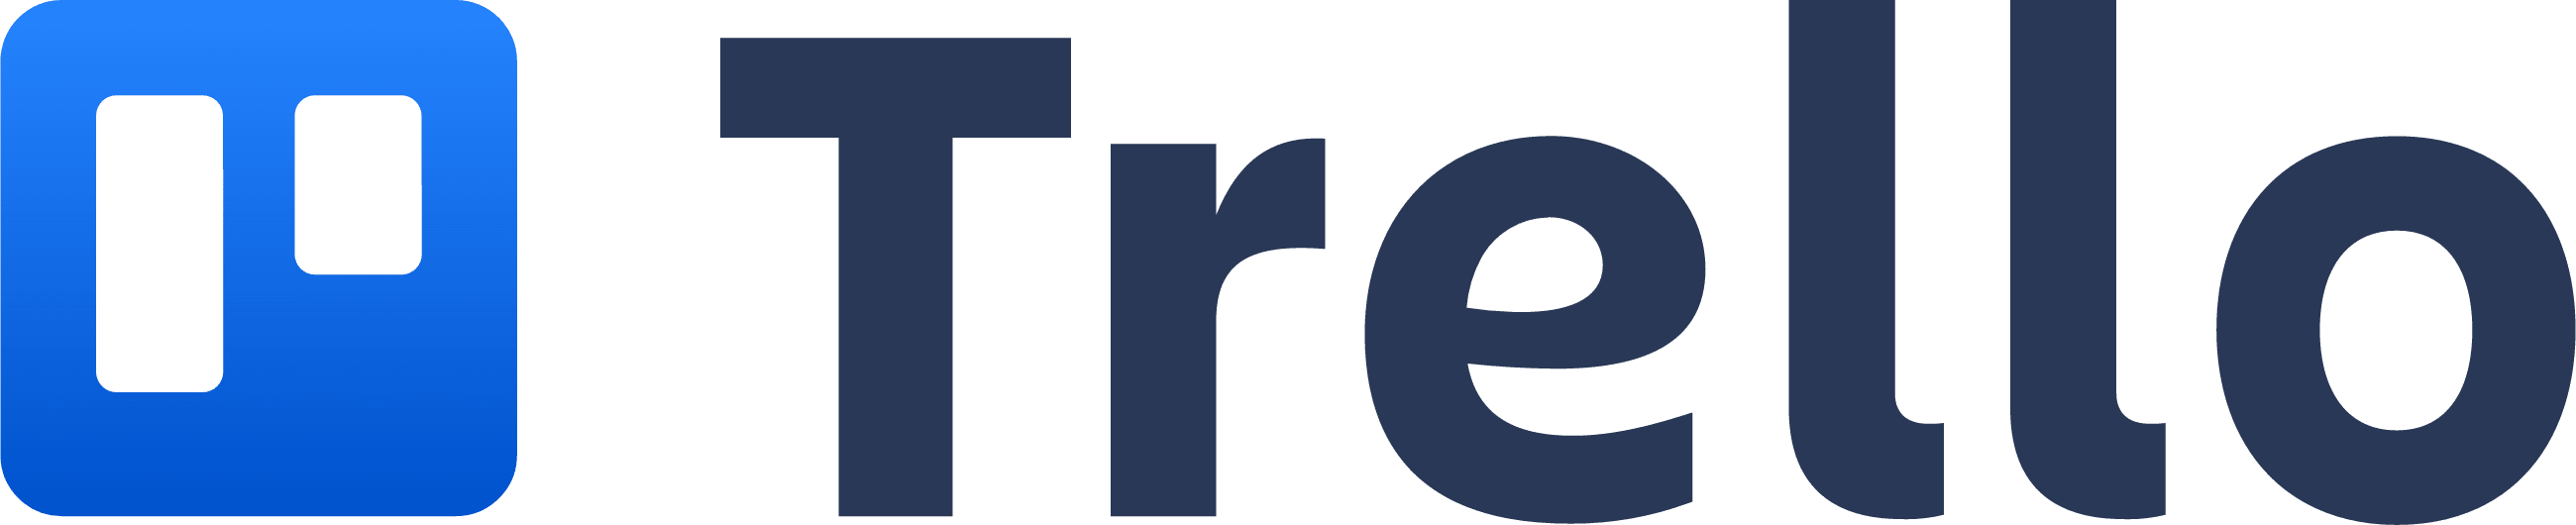 Logo Trello przypominające tablicę Trello z dwiema kolumnami.